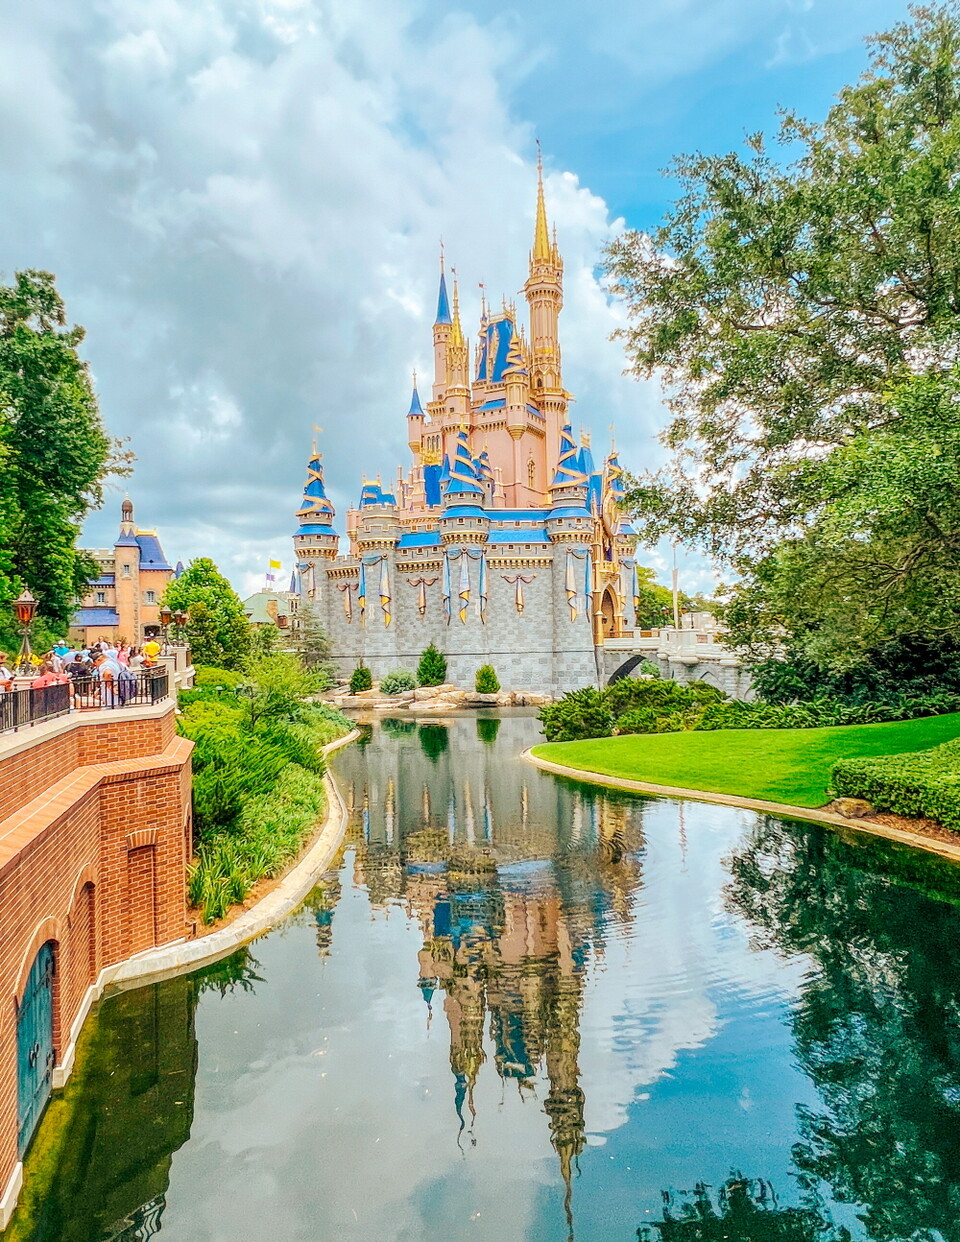 디즈니월드 4개 테마파크 중 가장 인기 있는 매직킹덤. 연못에 신데렐라성이담긴다